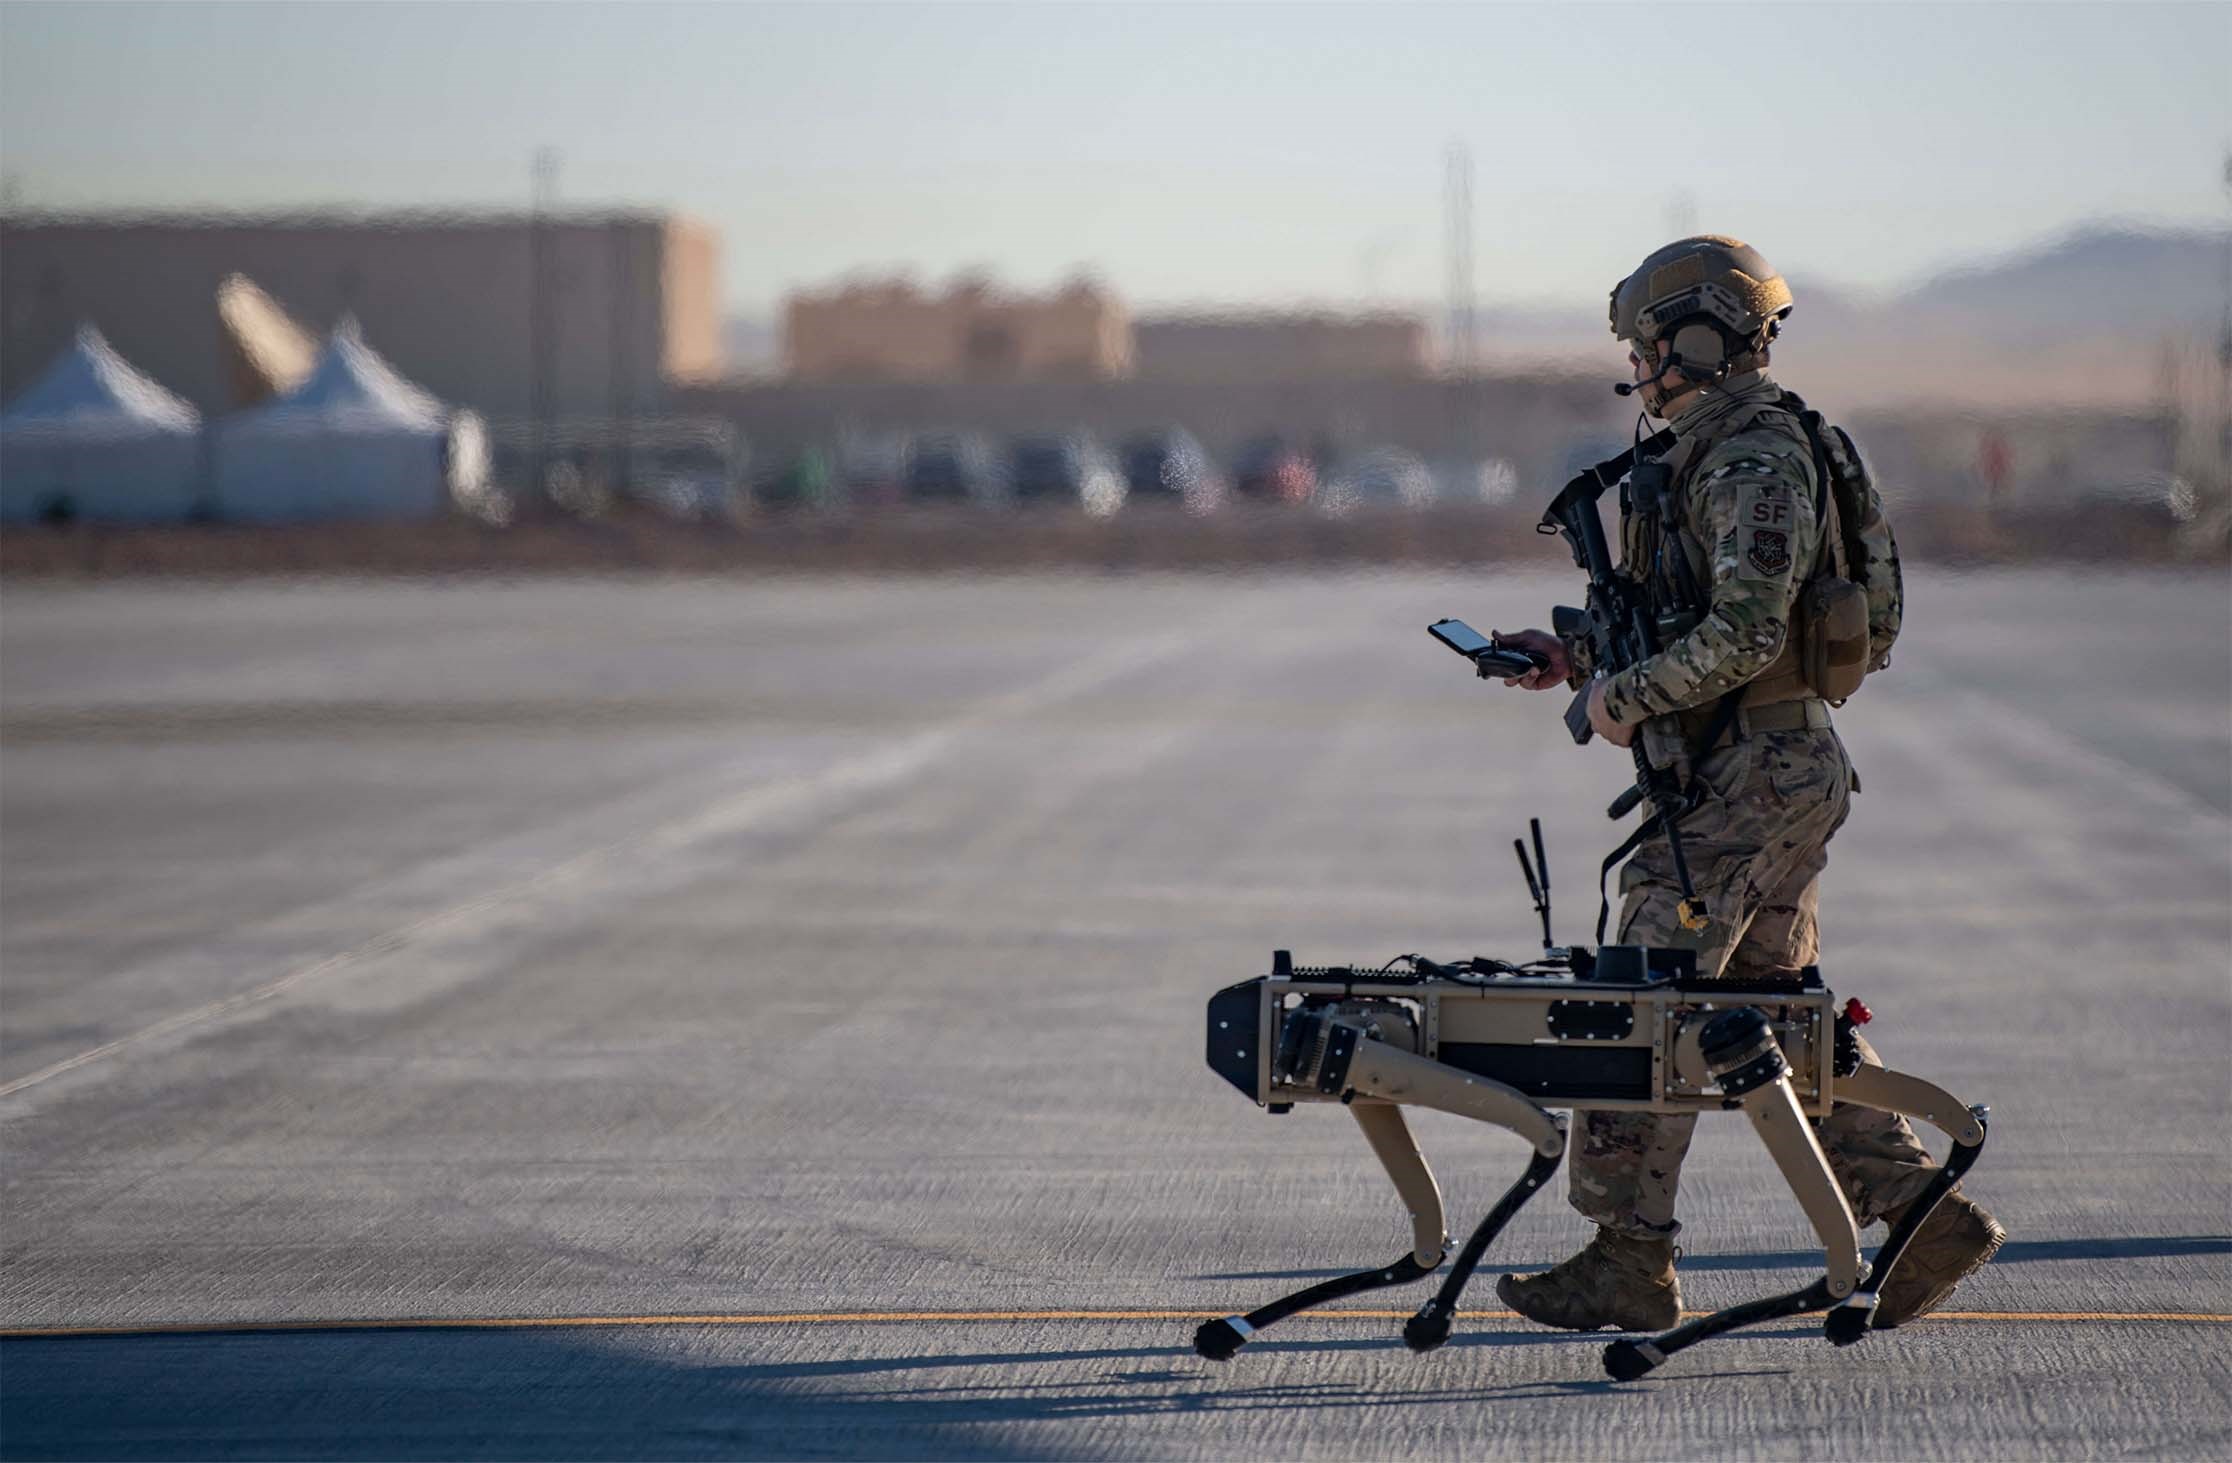 ABD'nin Meksika sınırında robot köpekler devriye gezecek